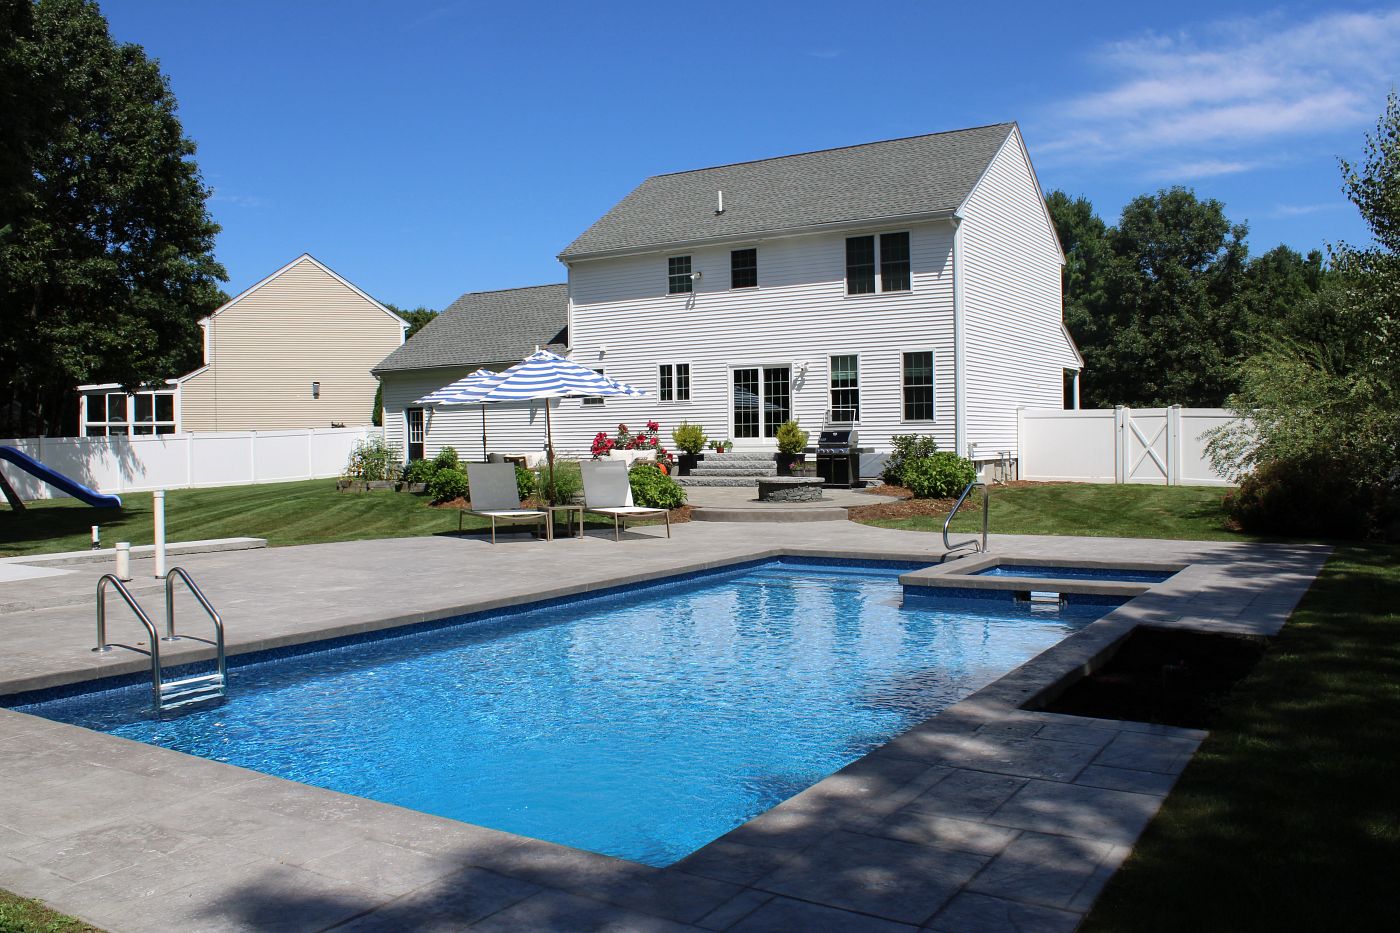 rectangular vinyl liner pool and spa in Massachusetts backyard